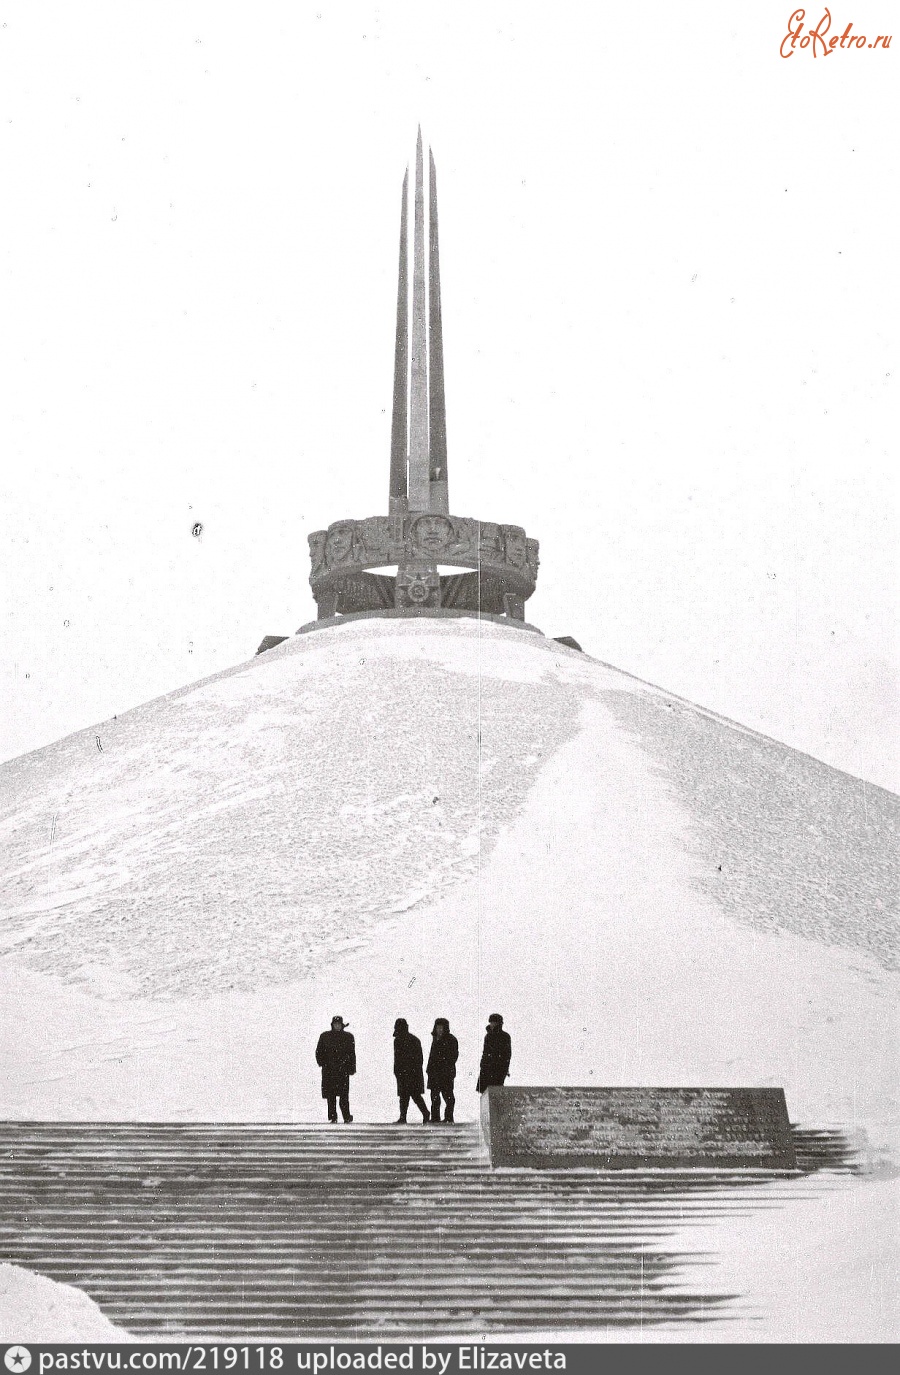 Минская область - Курган Славы 1967—1969, Белоруссия, Минская область